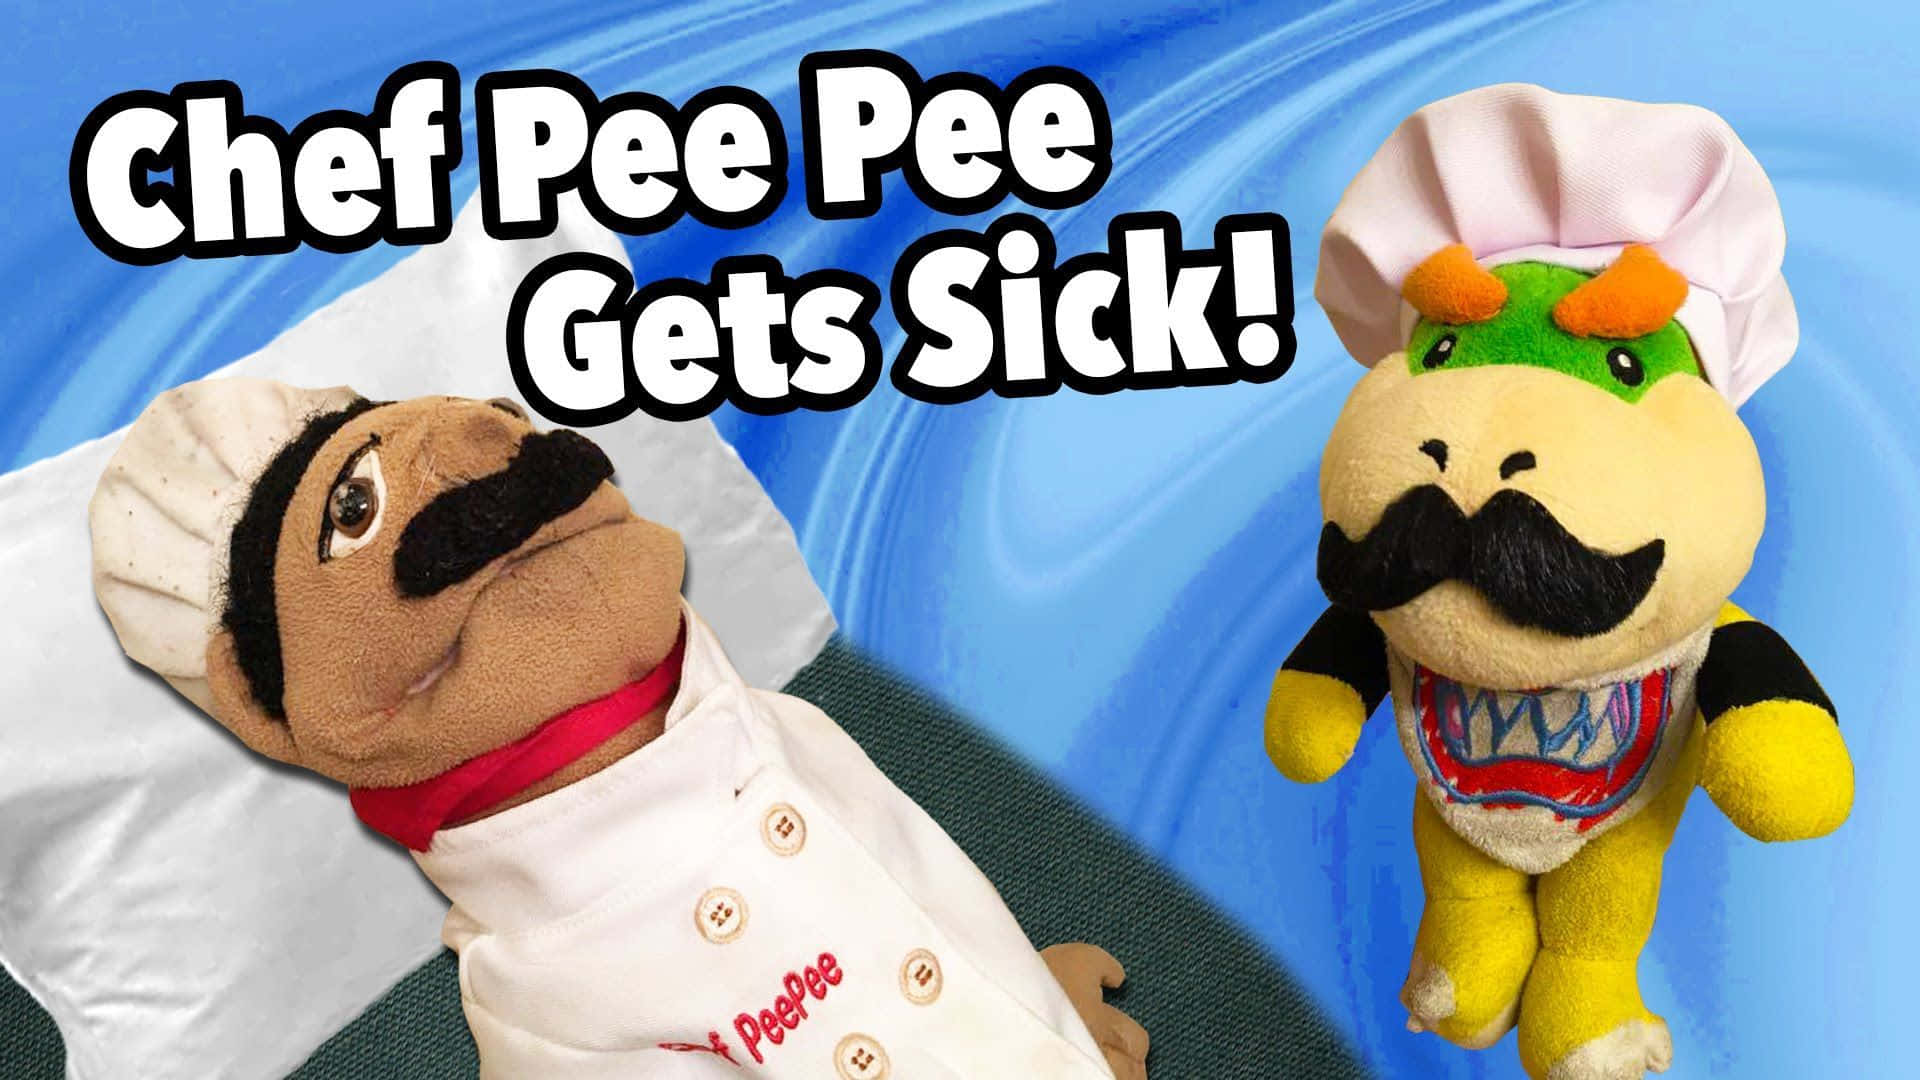 !Super Mario Logan Chef Pee Pee bliver syg! Wallpaper